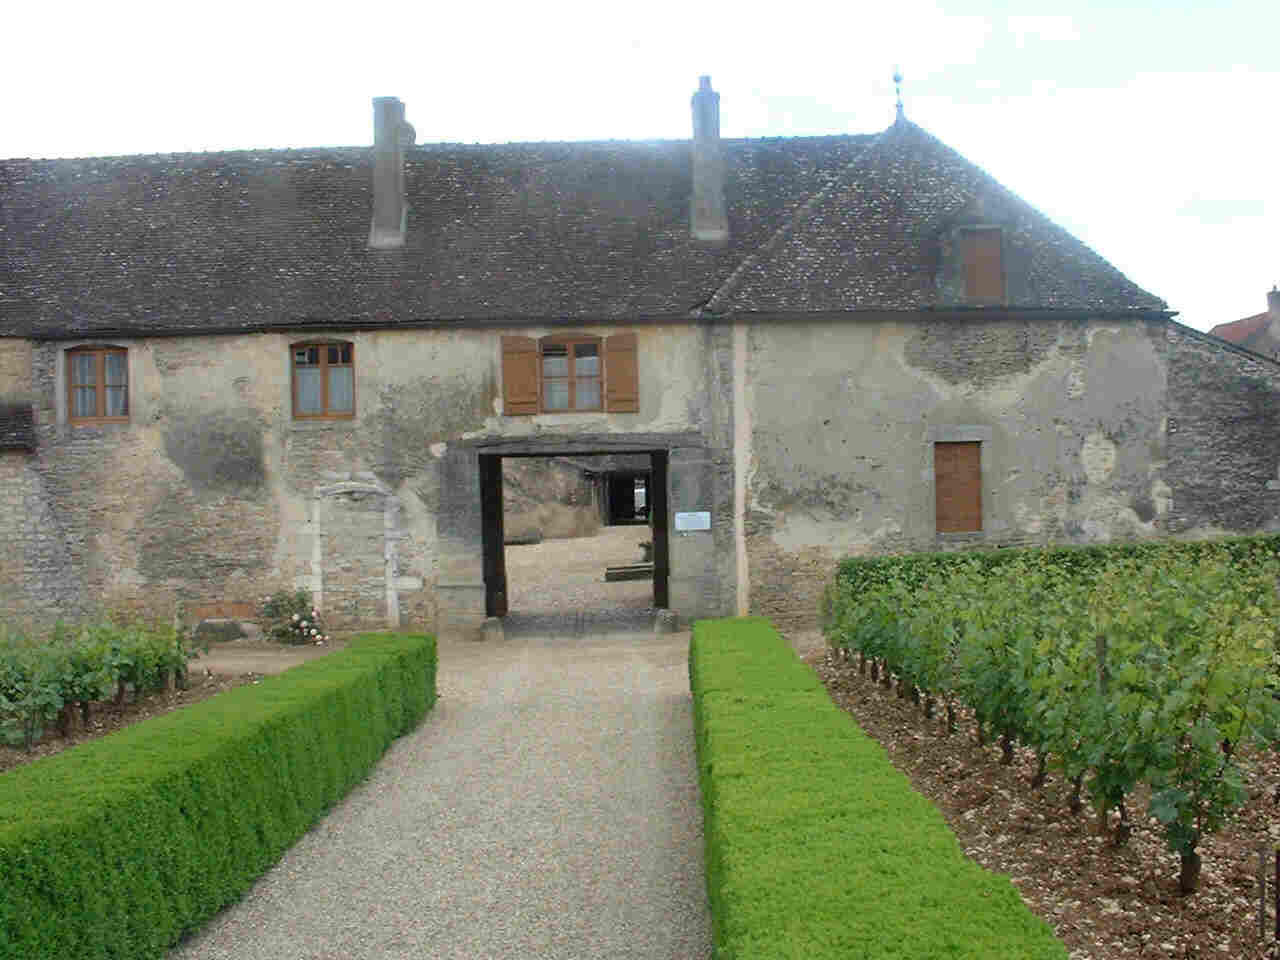 Chateau de Pommard winery